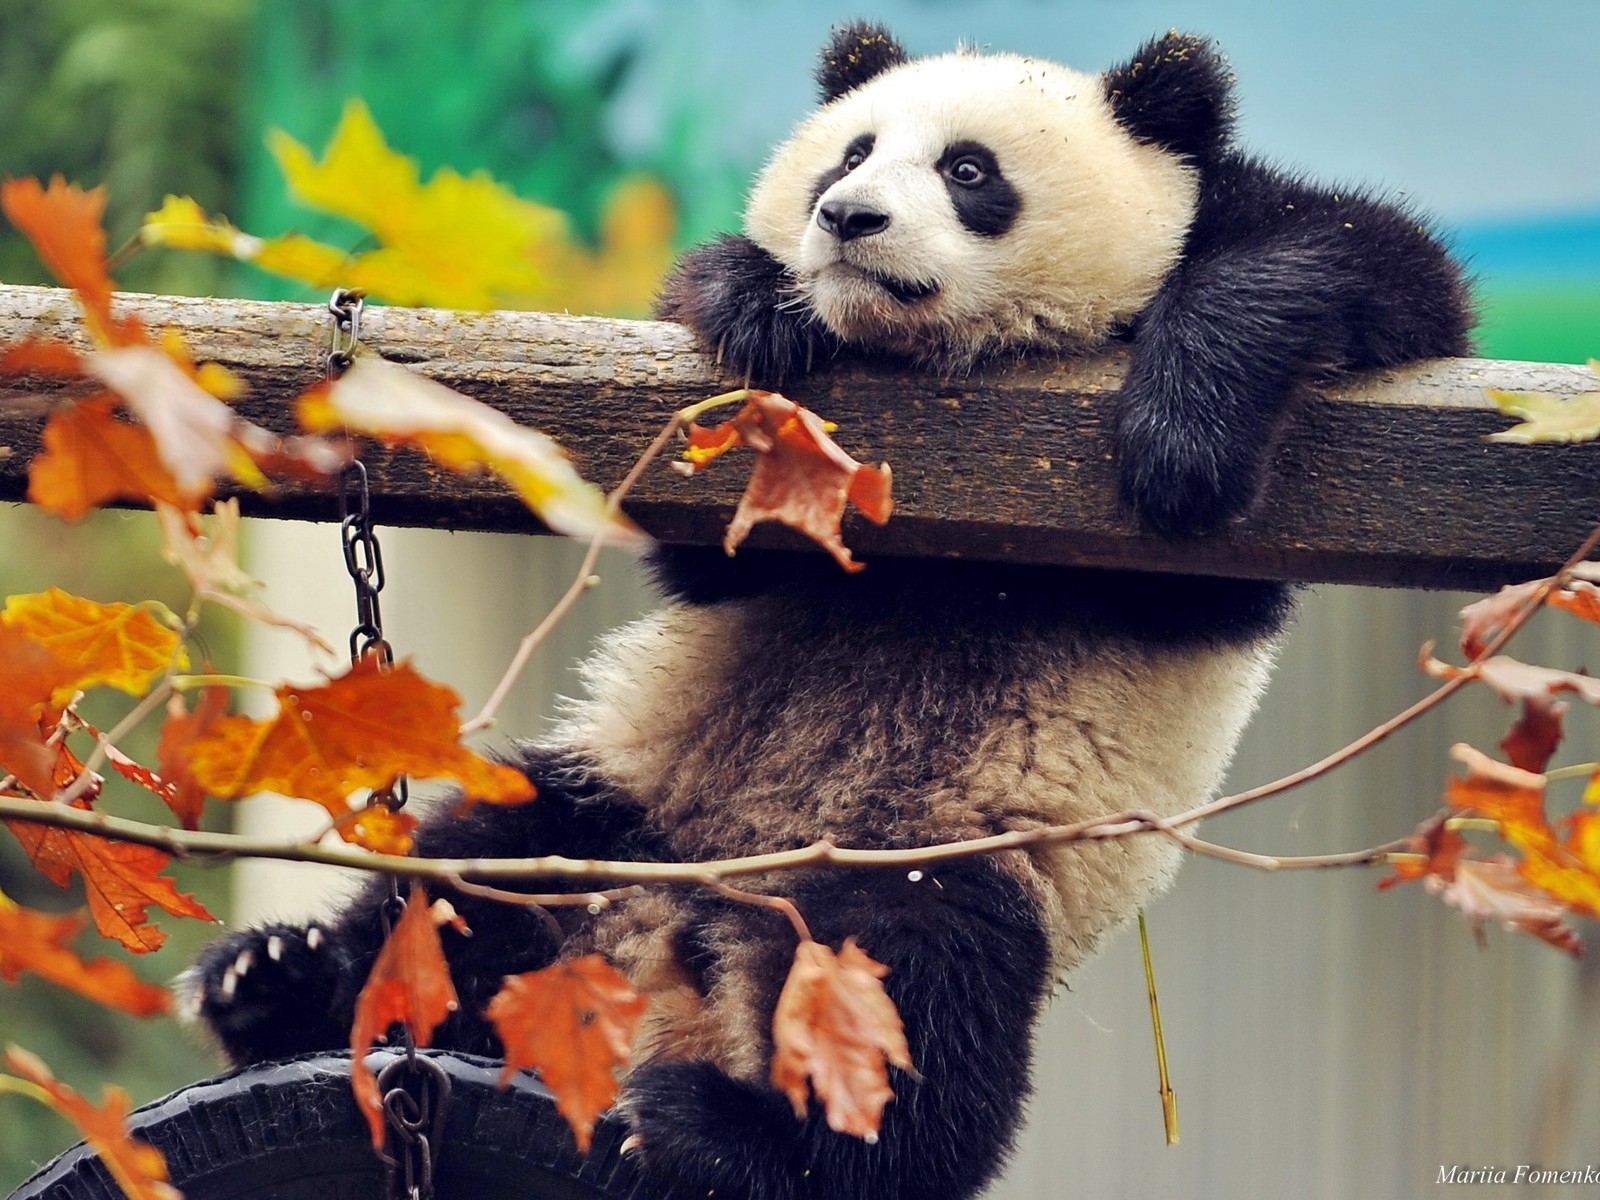 Cute Panda Climbing for 1600 x 1200 resolution